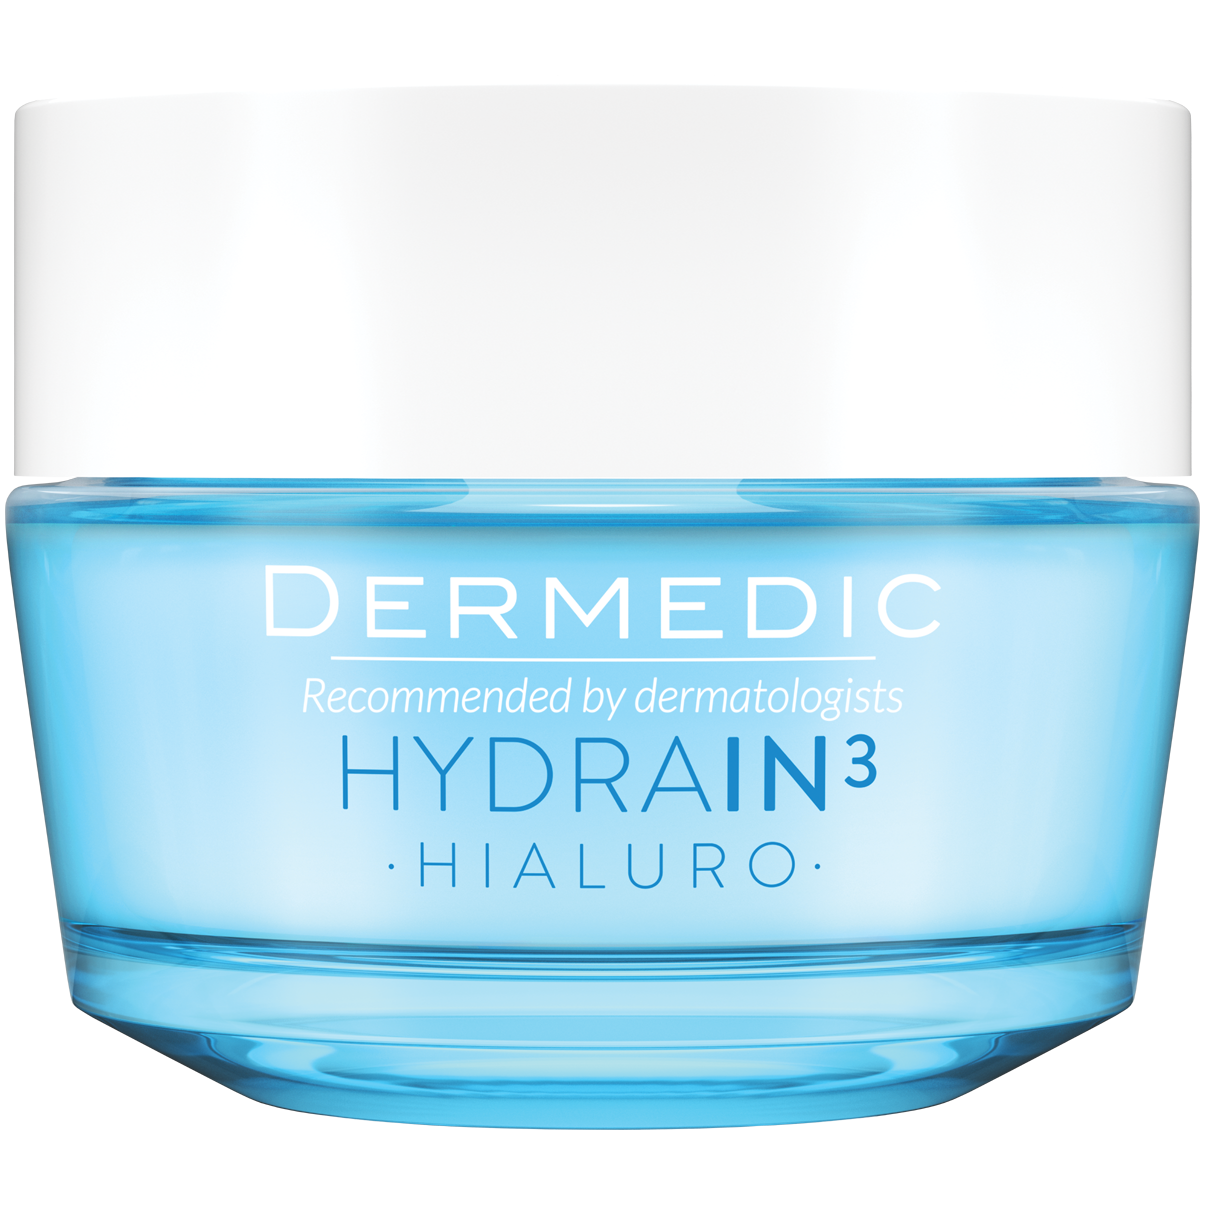 Dermedic Hydrain3 Hialuro ультраувлажняющий крем-гель для лица, 50 г крем для лица dermedic hydrain3 50 мл